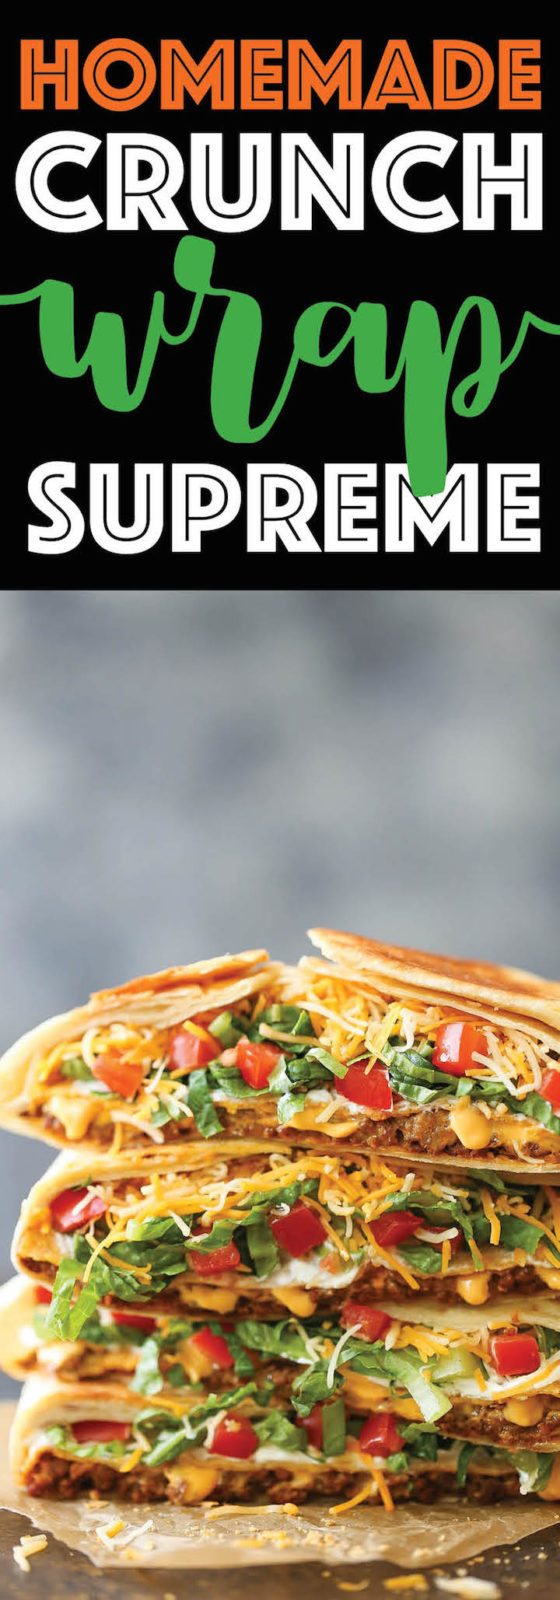 keto crunch wrap supreme